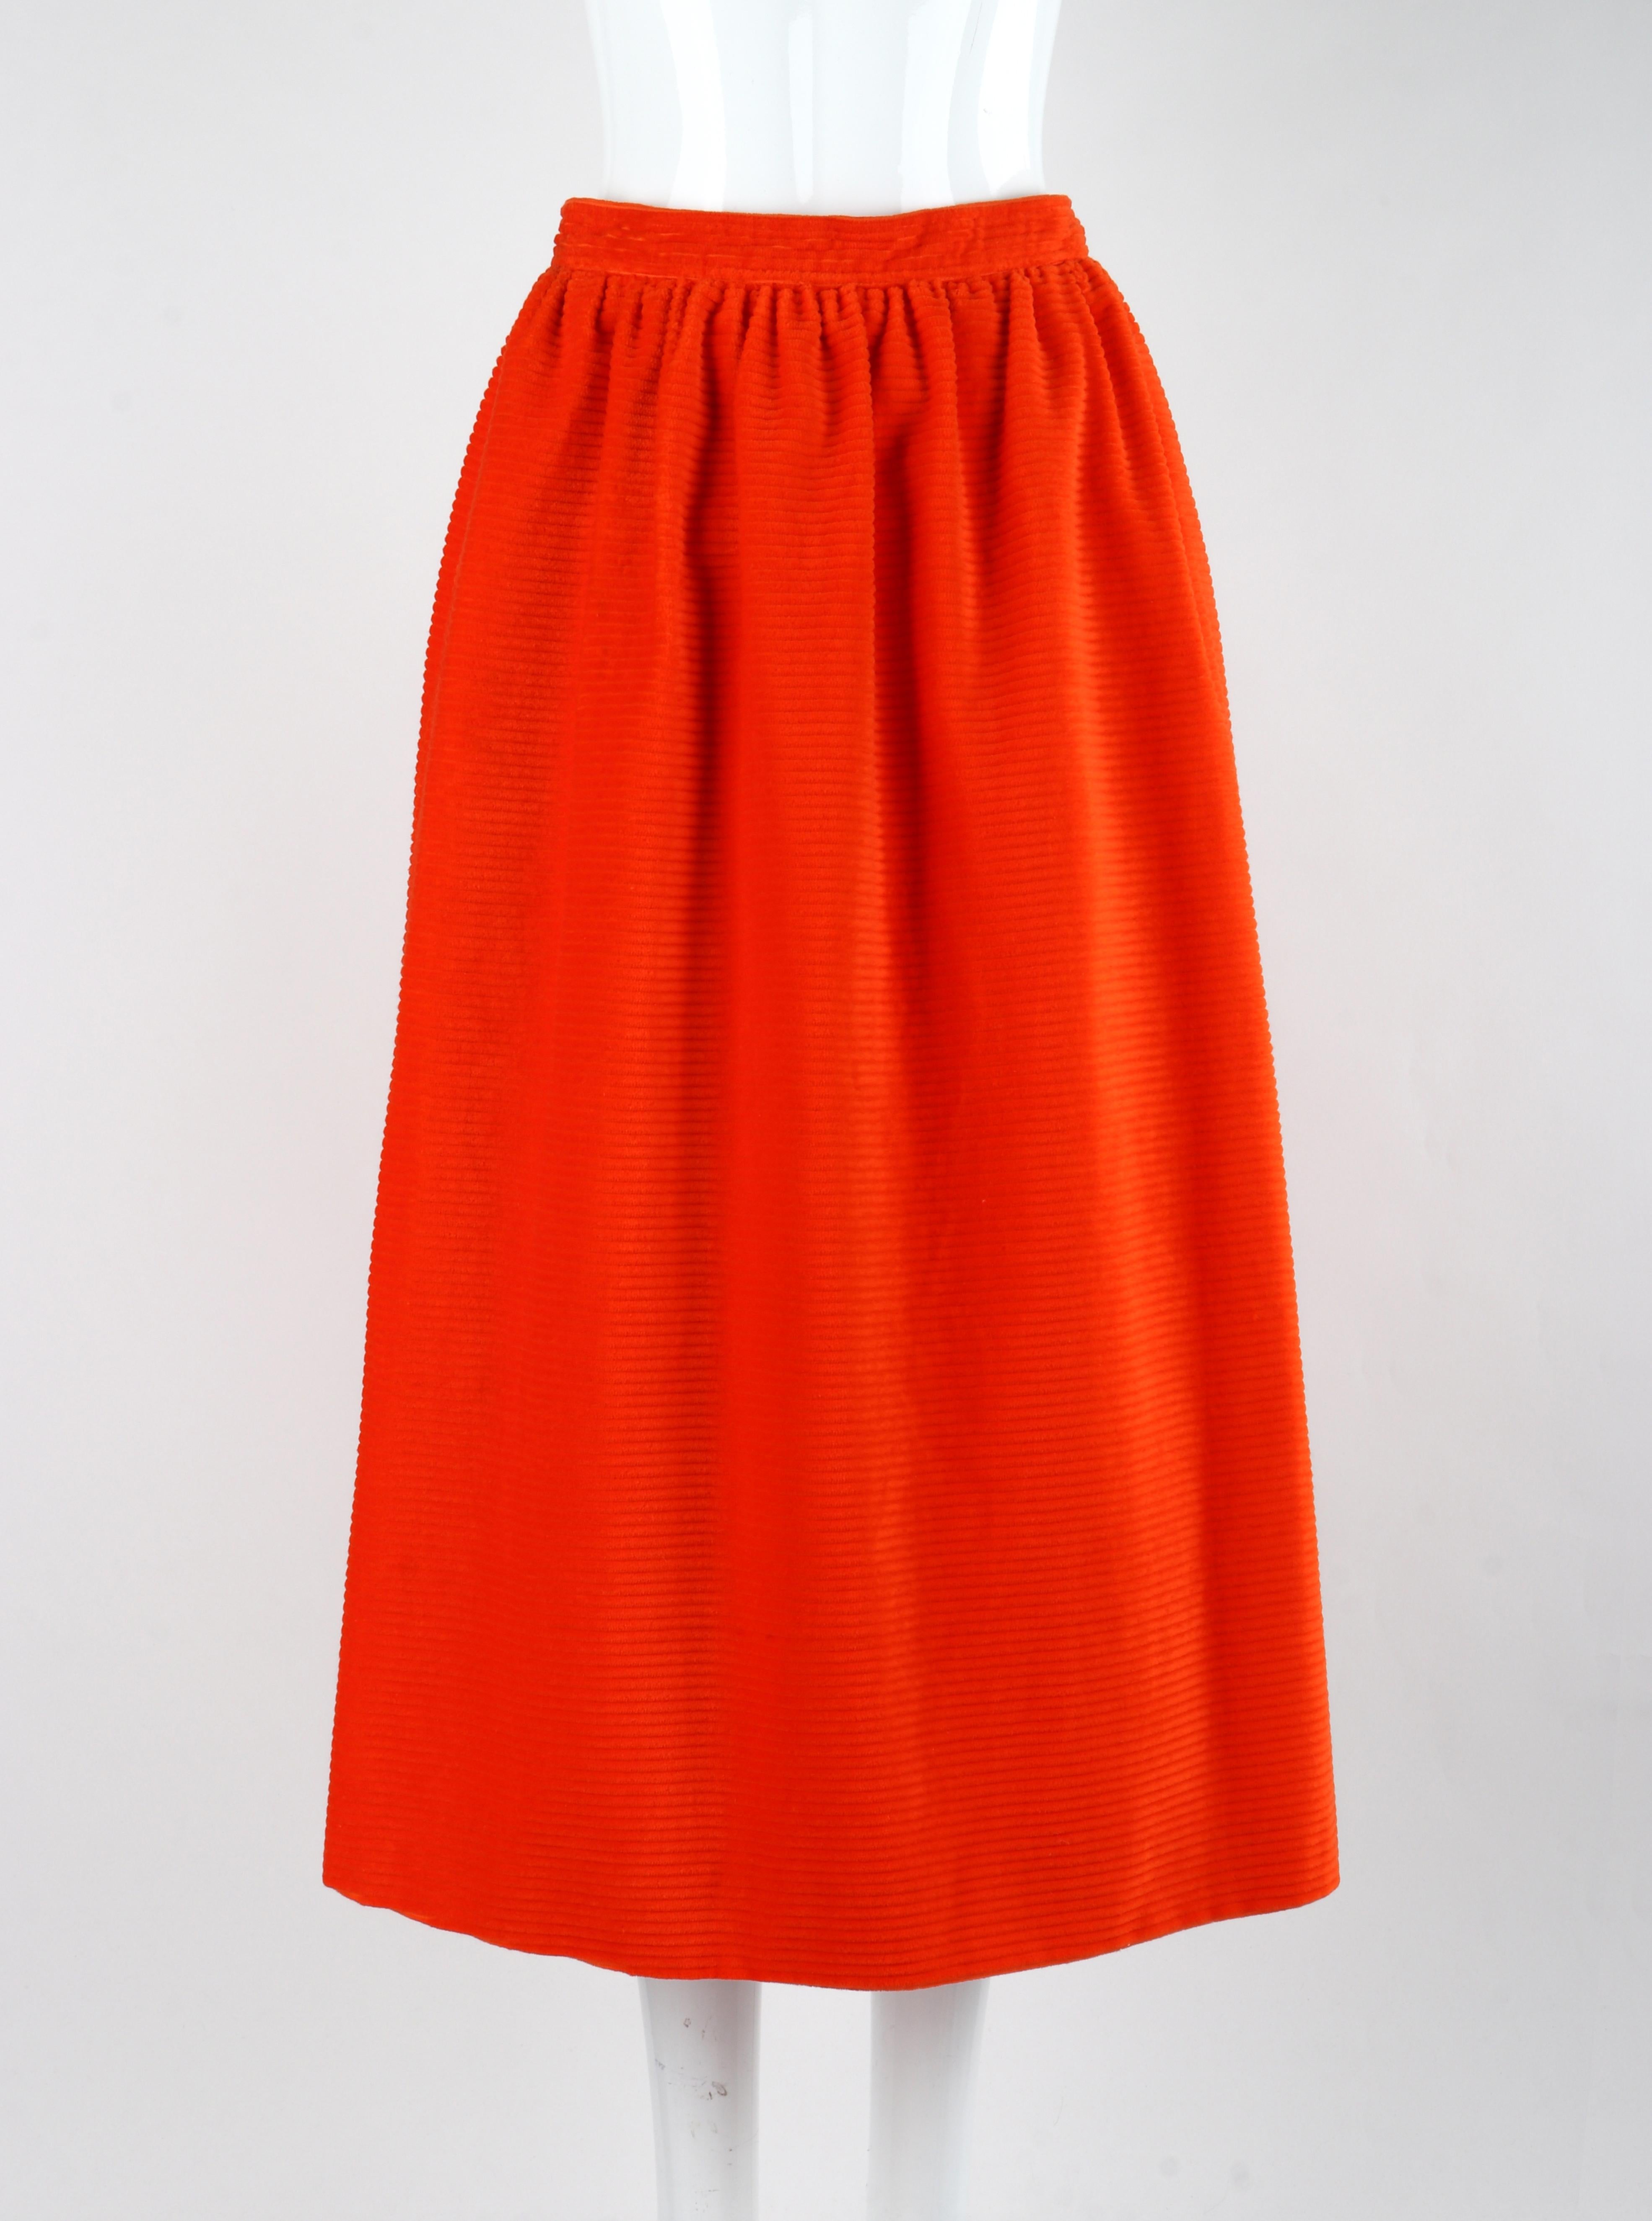 COURREGES c.1970's Orange Corduroy Button Up Jacket Blazer Skirt Suit Set w/Tags For Sale 3